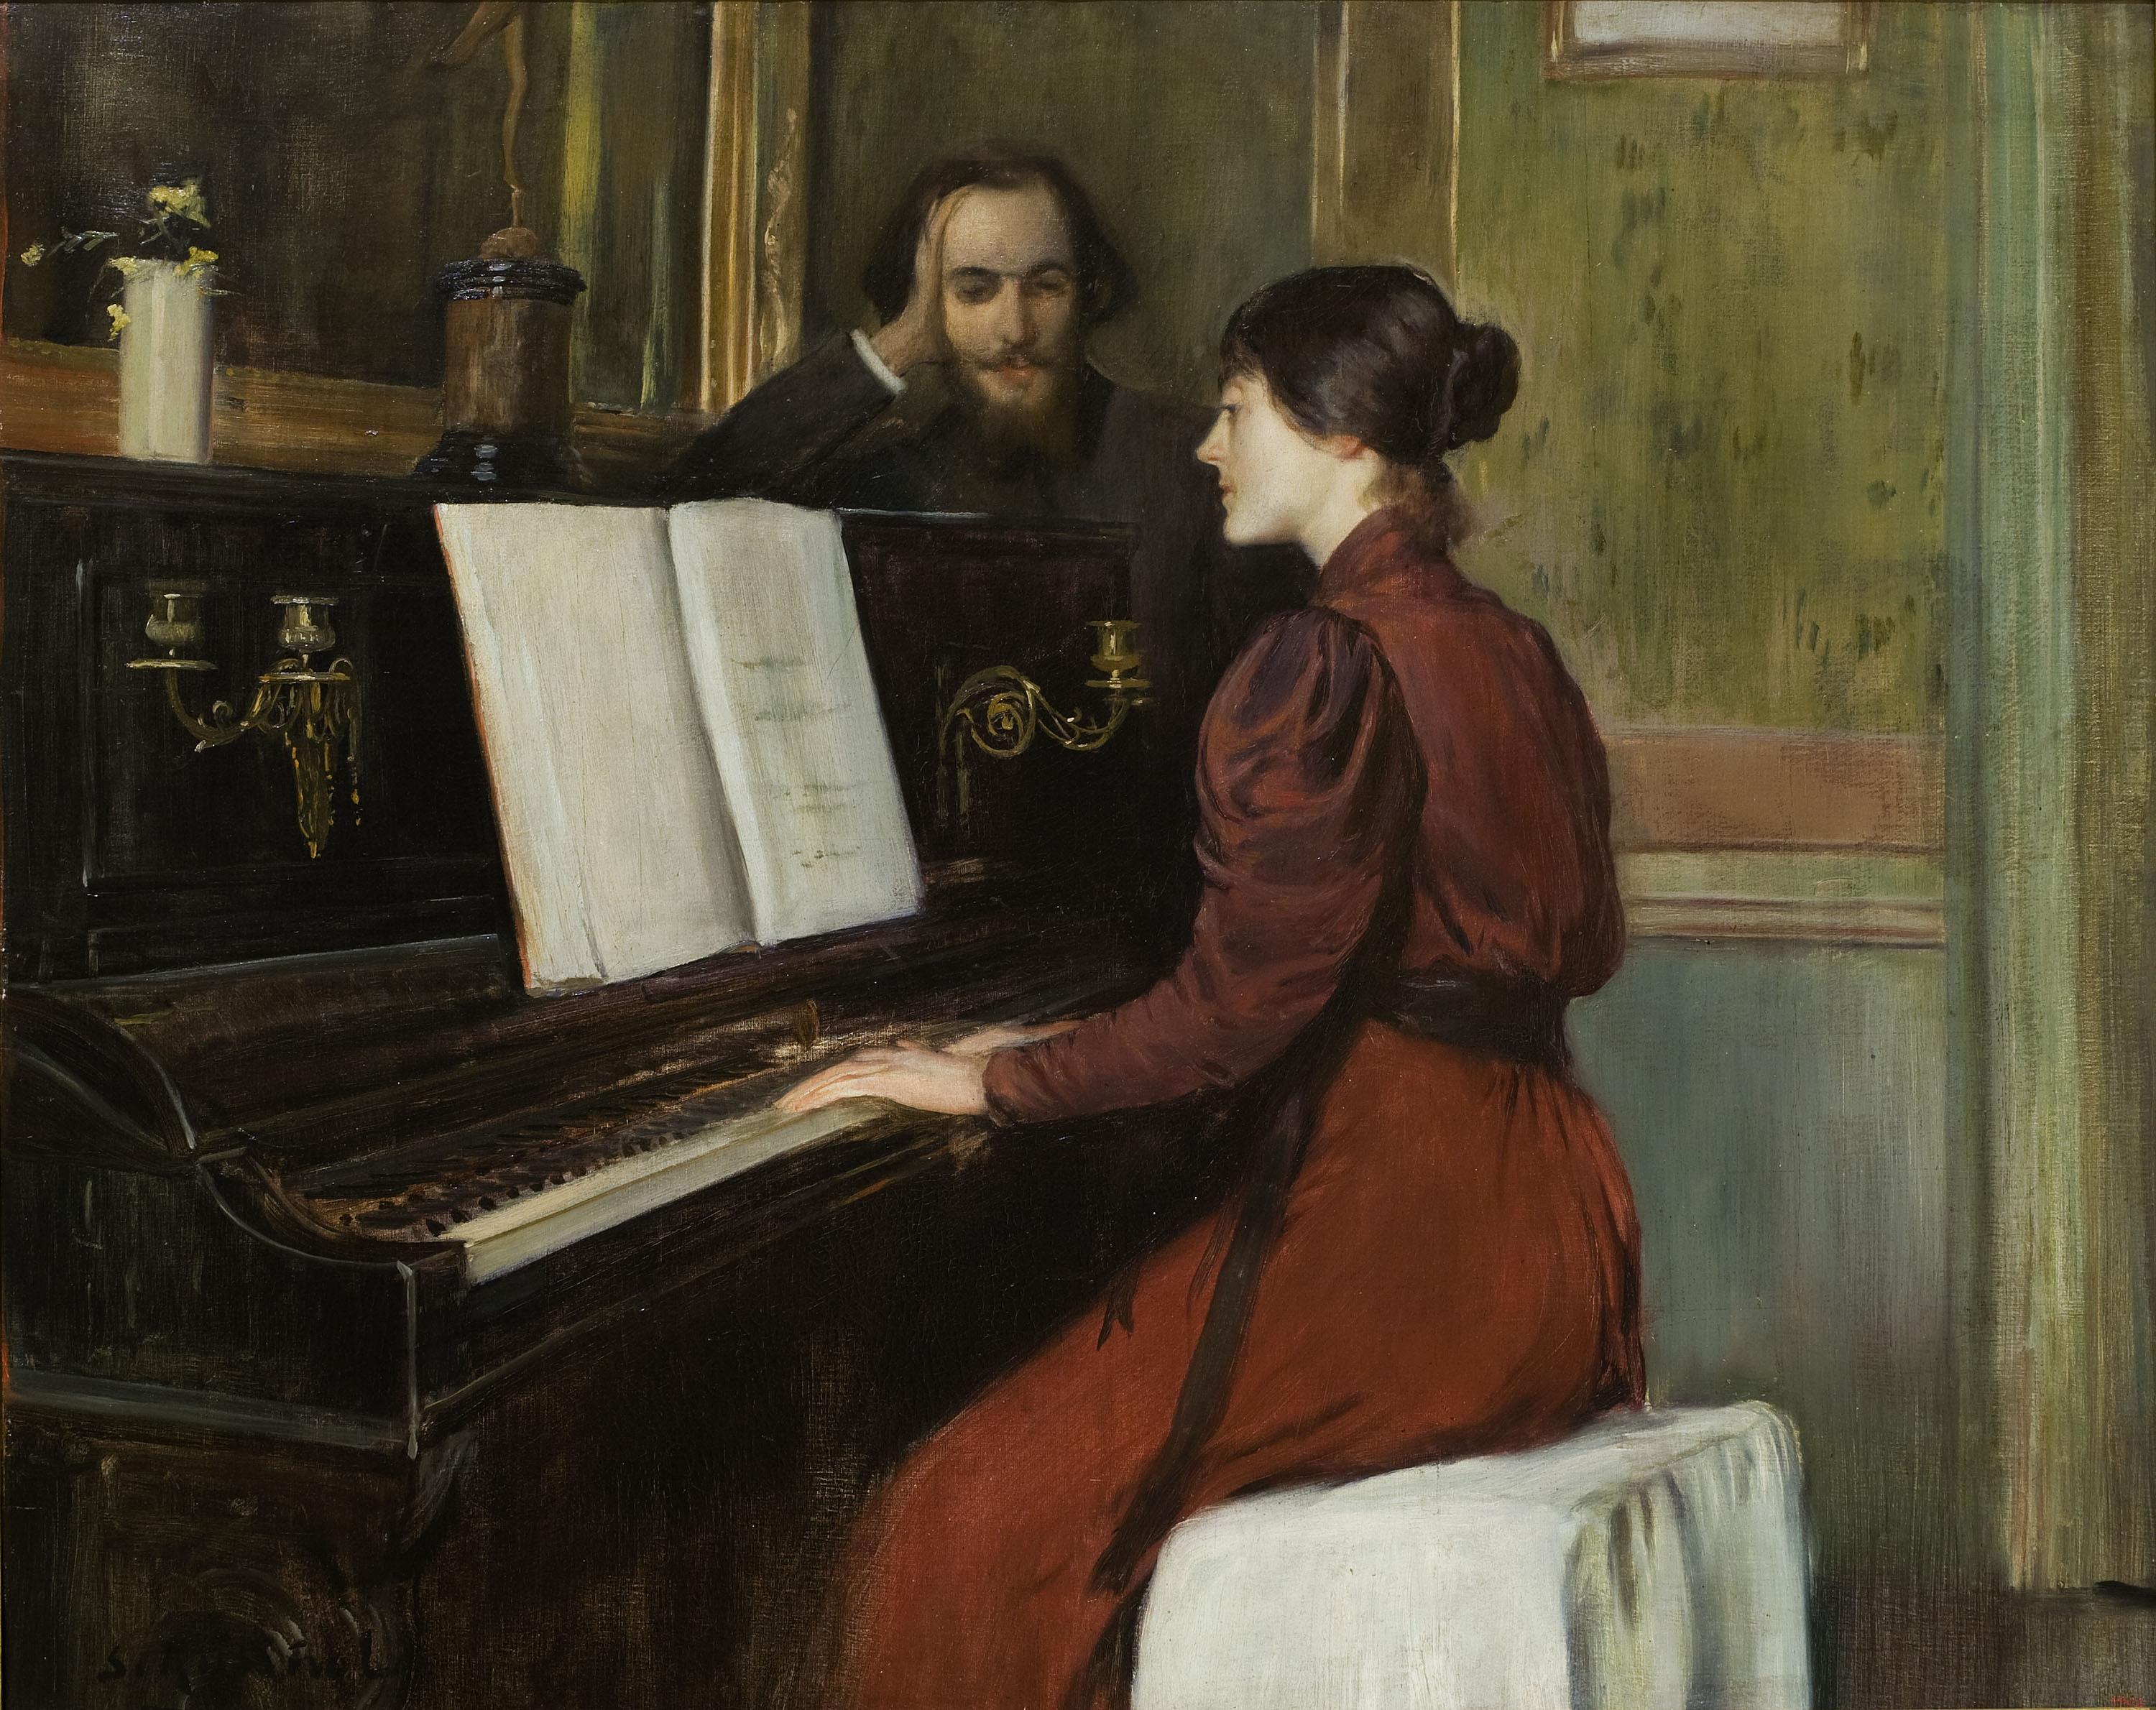 Santiago Rusiñol, Una romanza, 1891